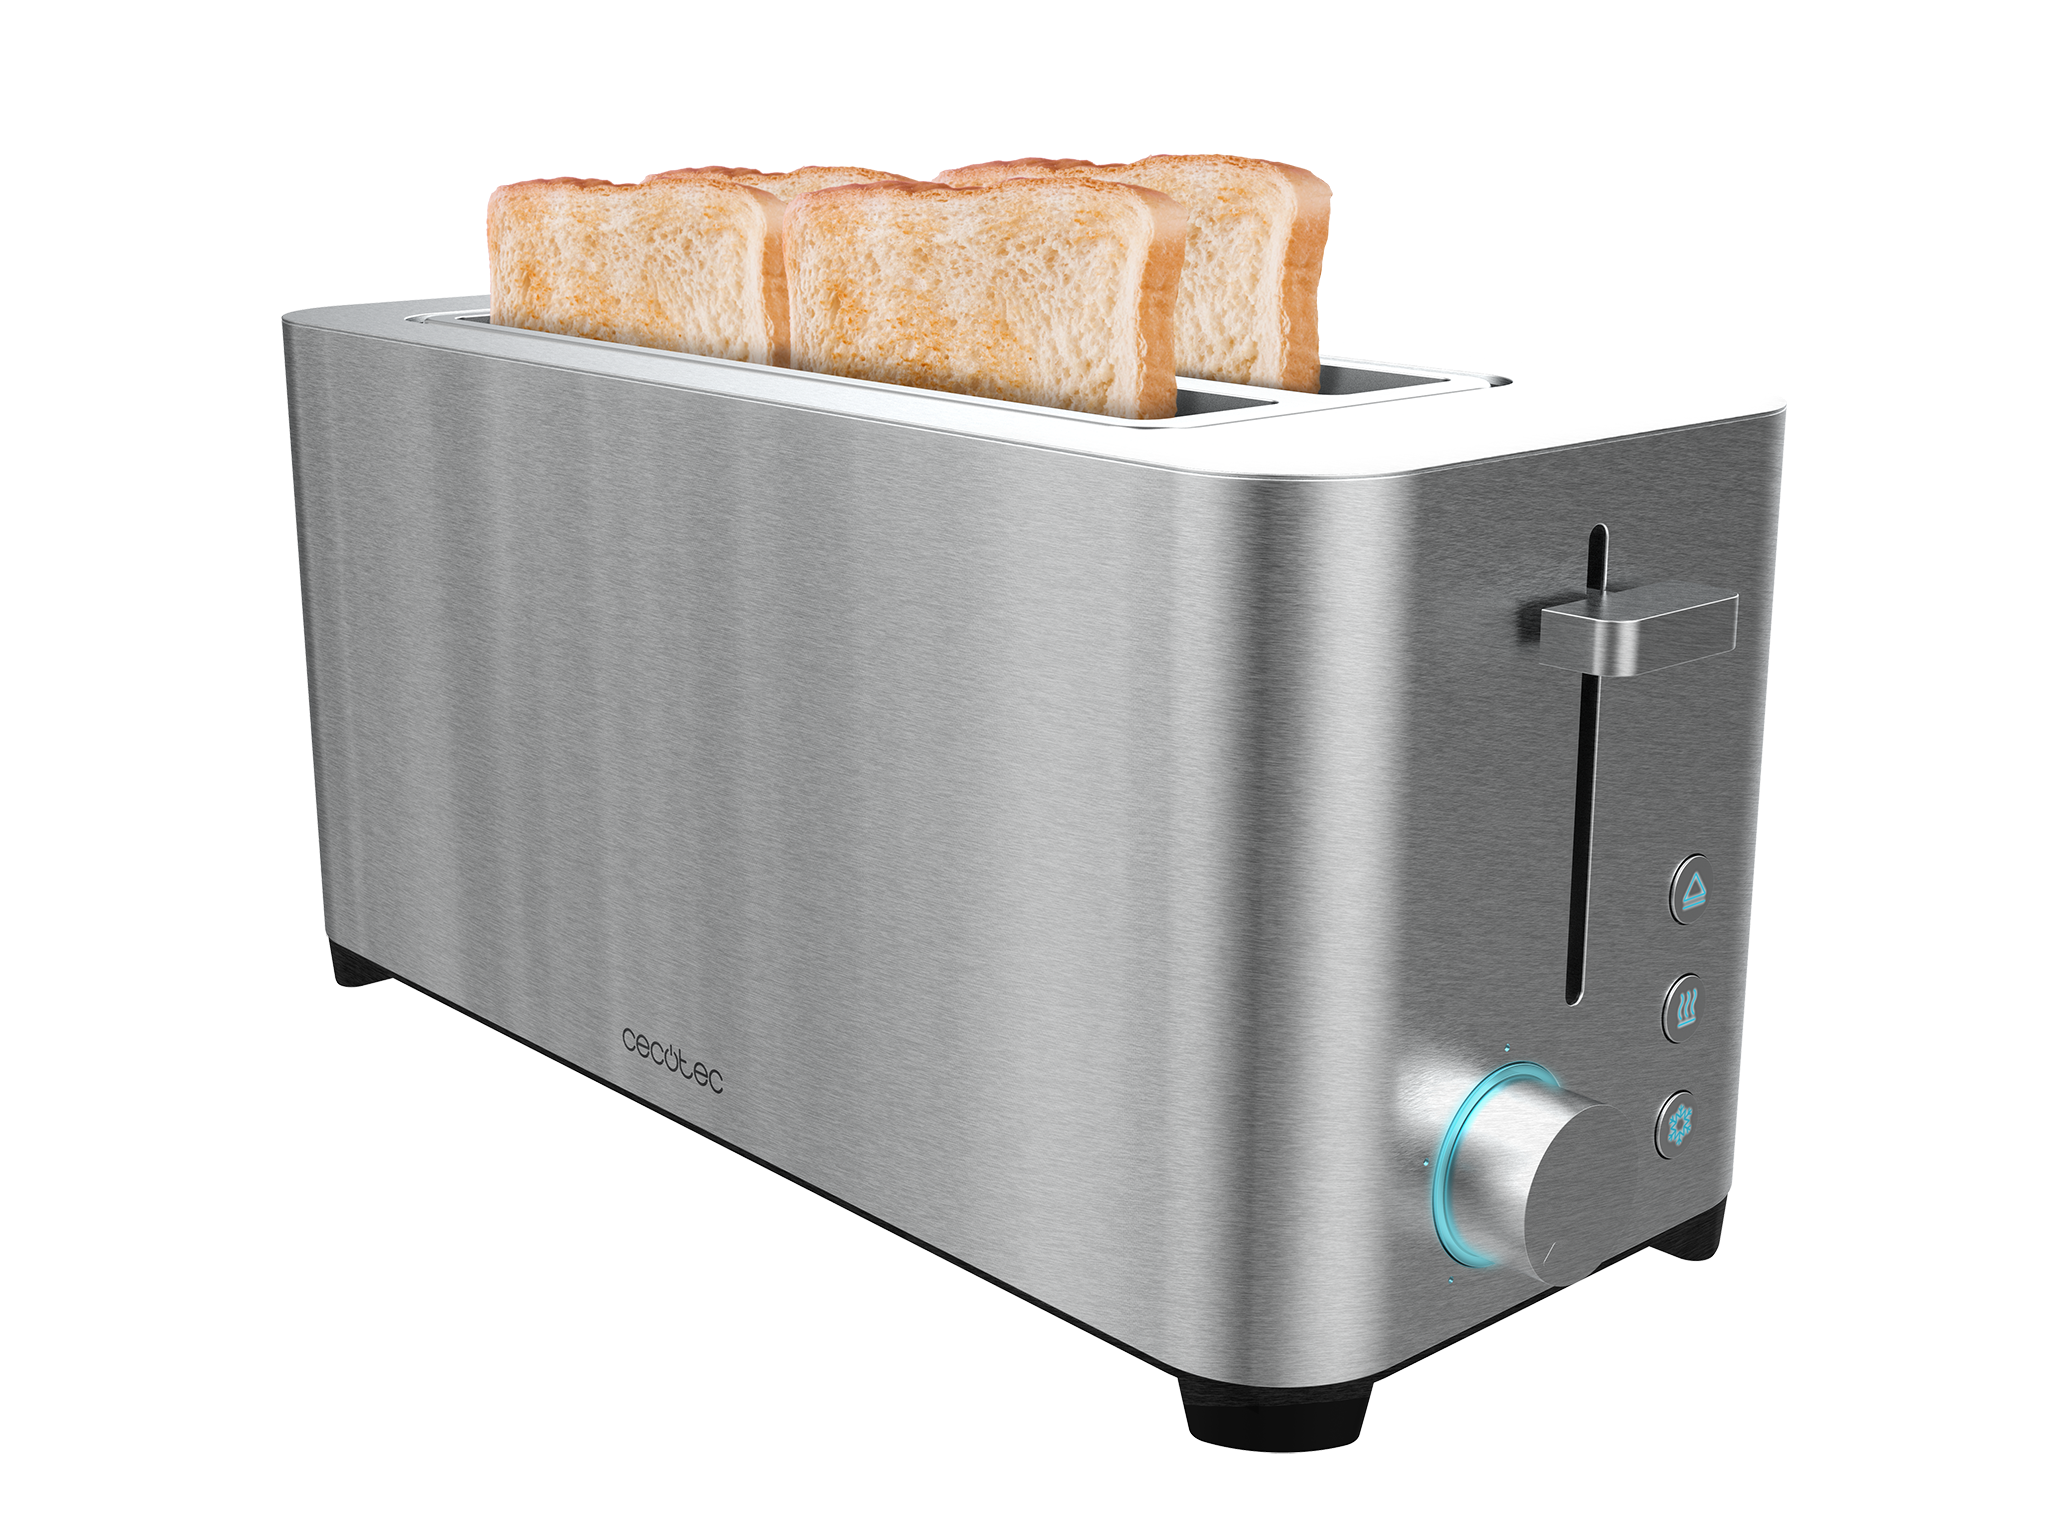 YummyToast Extra Doppel-Toaster - Doppelter Langschlitz, Edelstahl-Oberfläche, 4 Toasts, 1400 Watt Leistung, 5 Leistungsstufen, 2 voreingestellte Funktionen